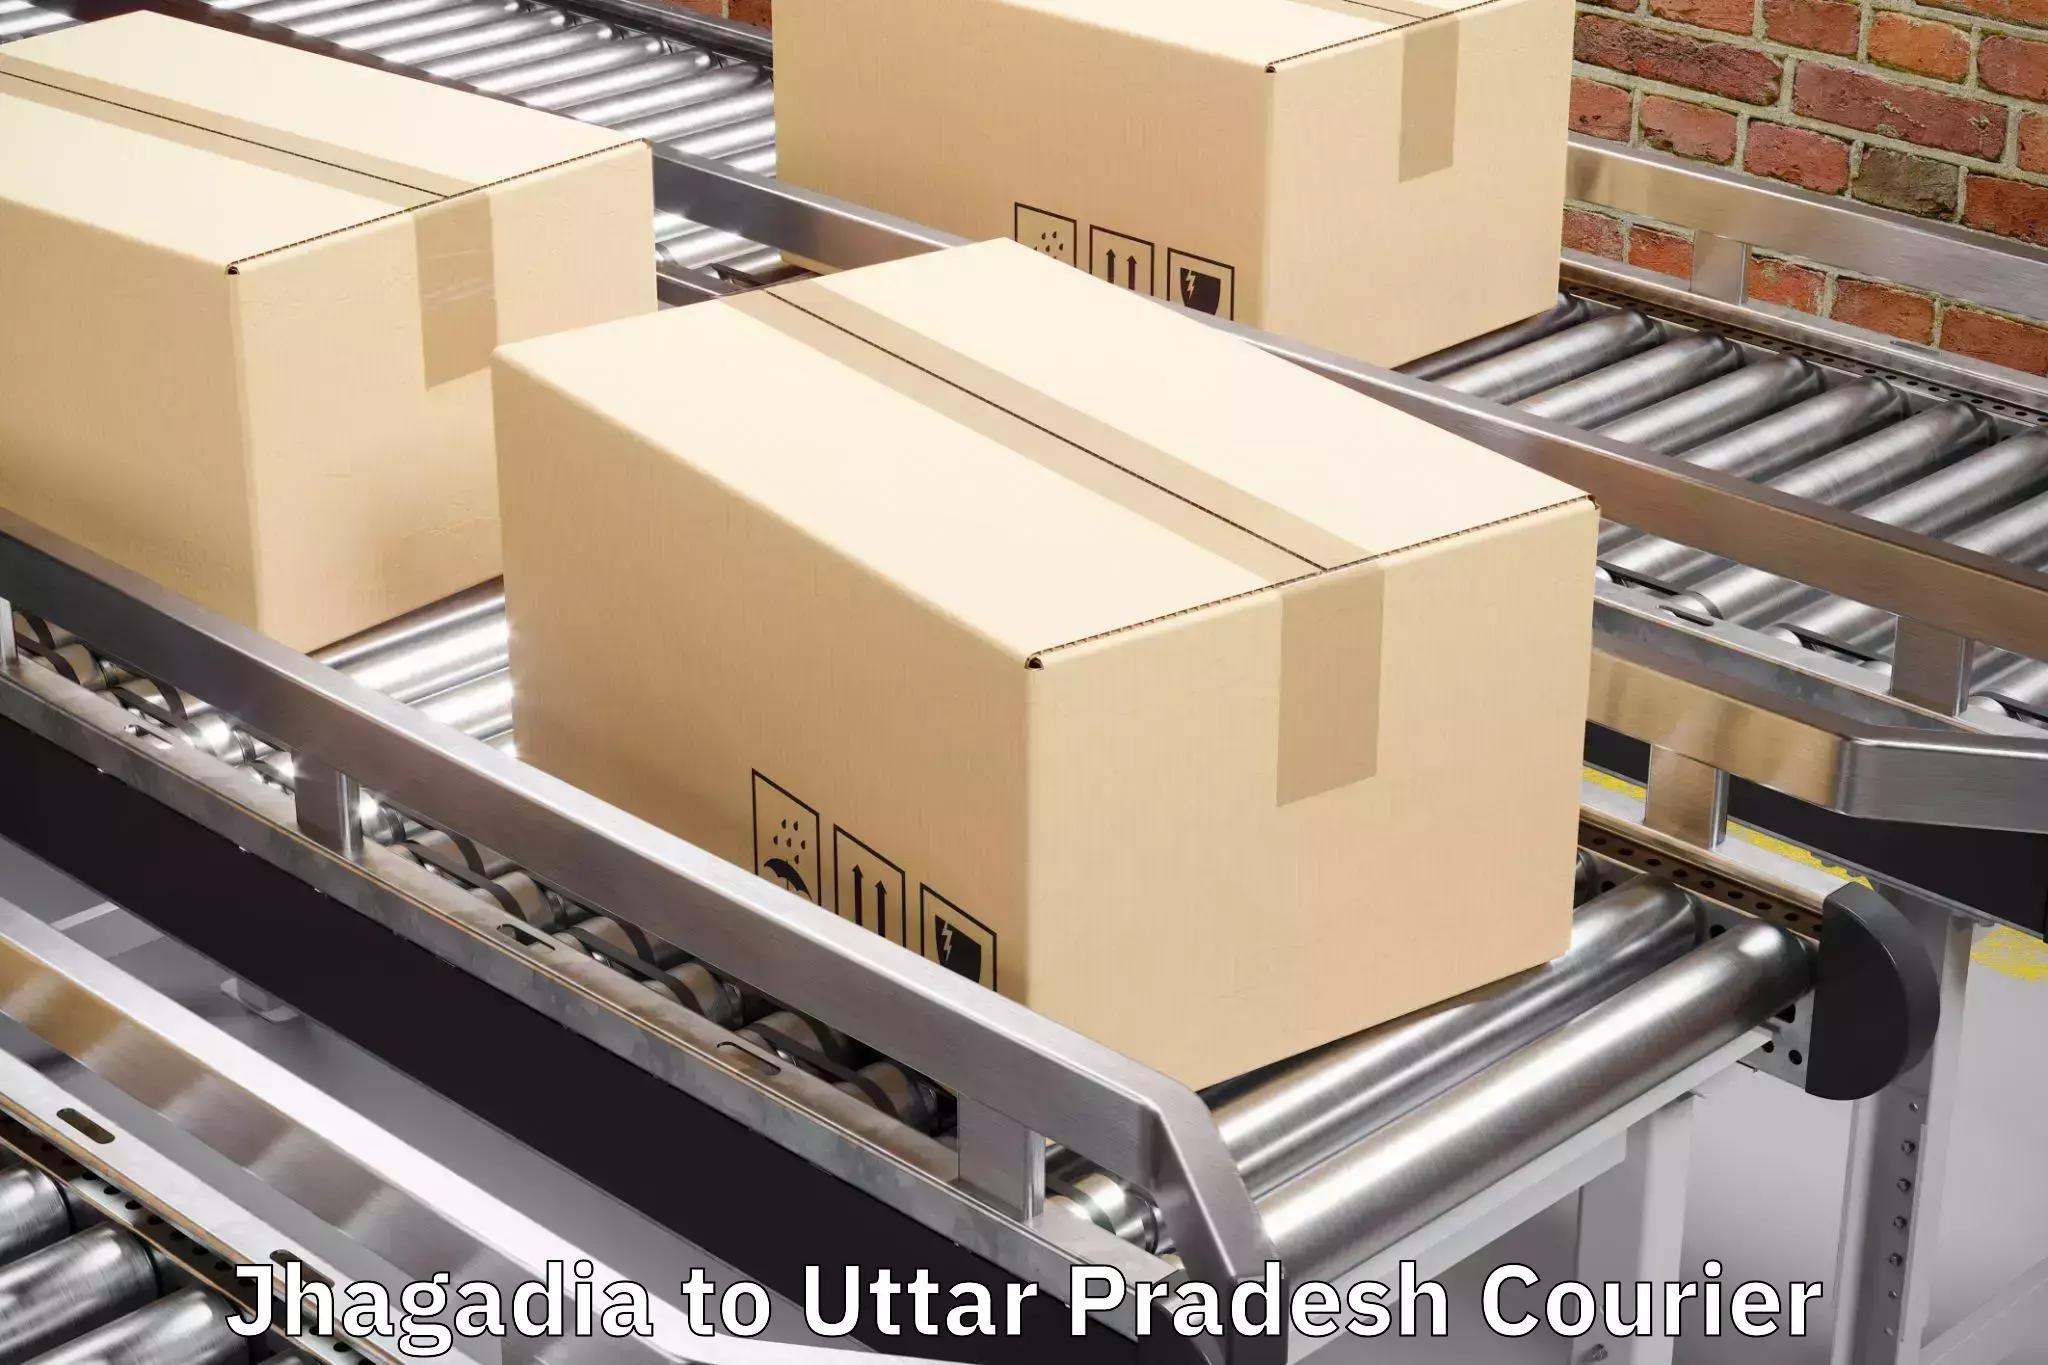 Global baggage shipping in Jhagadia to Kushinagar